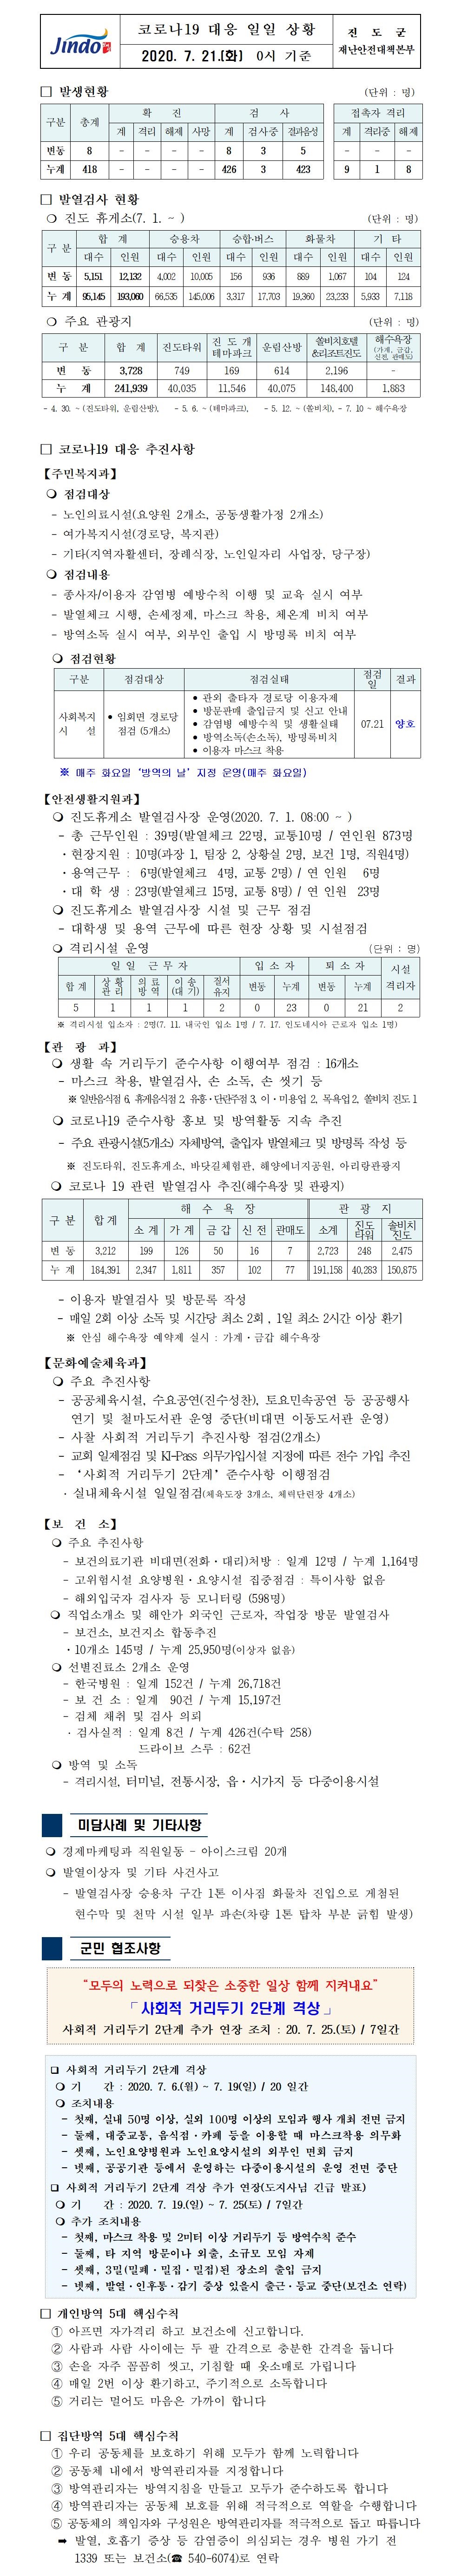 코로나19대응 일일 상황 보고(7월 21일 0시 기준) 첨부#1